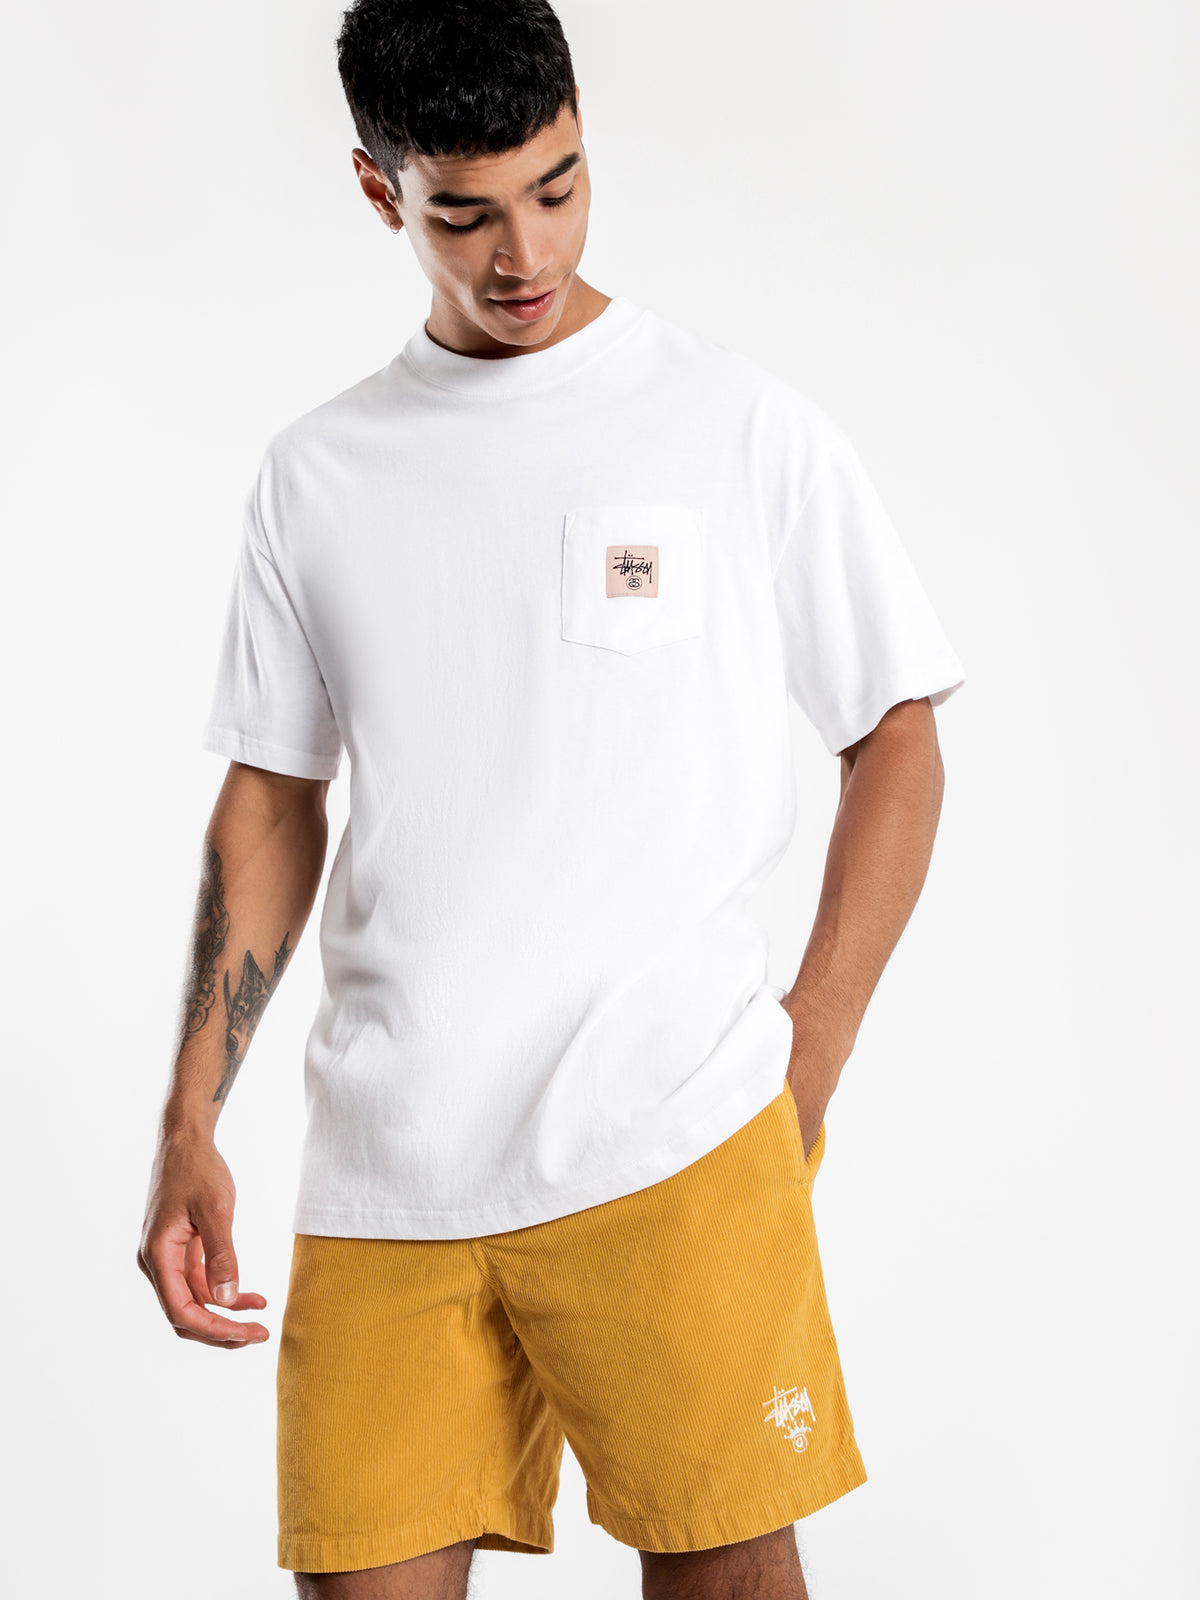 Graffiti Link Pocket Short Sleeve T-Shirt in White